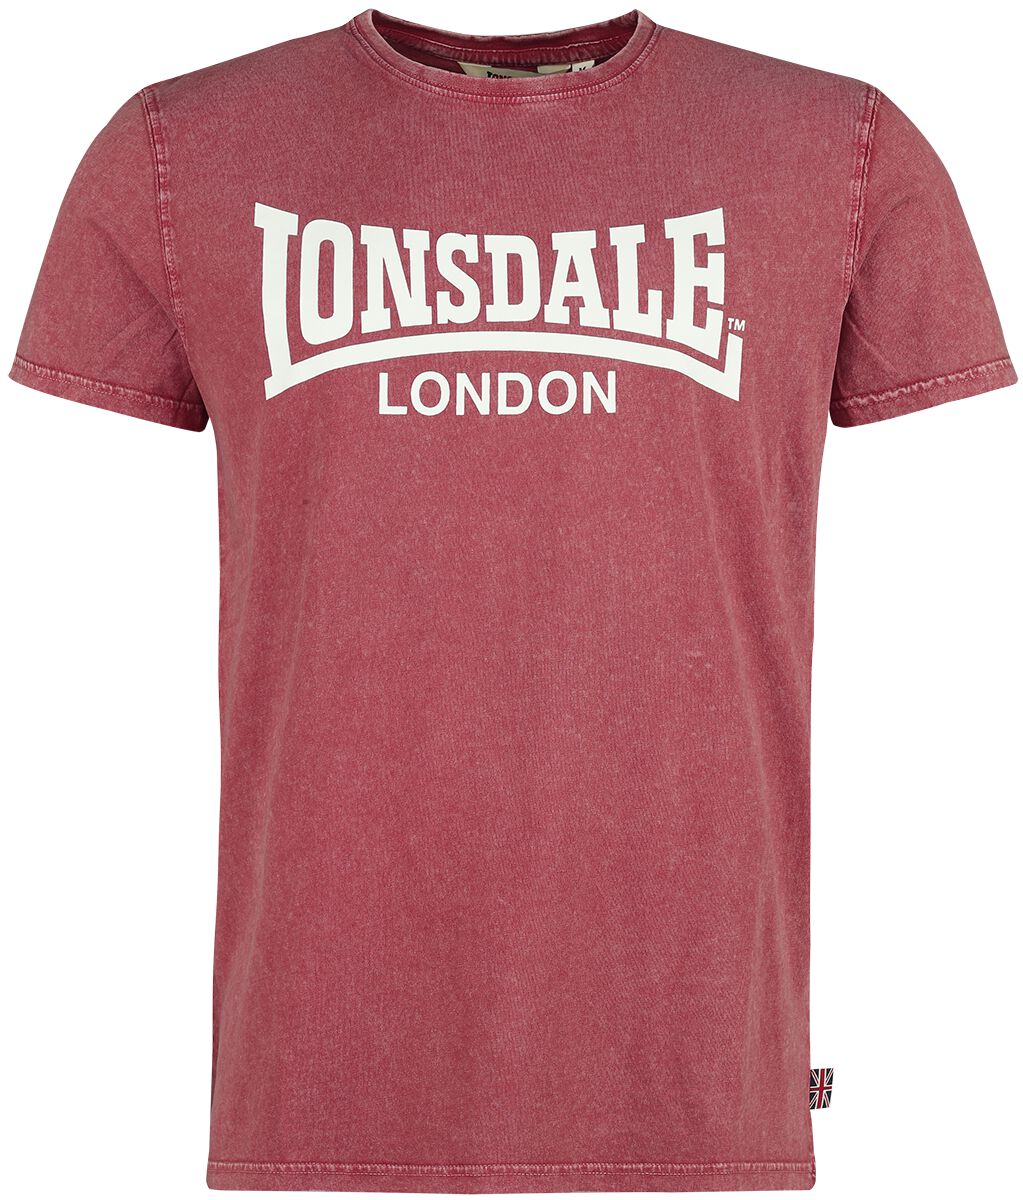 Lonsdale London T-Shirt - STOFA - S bis XXL - für Männer - Größe L - rot